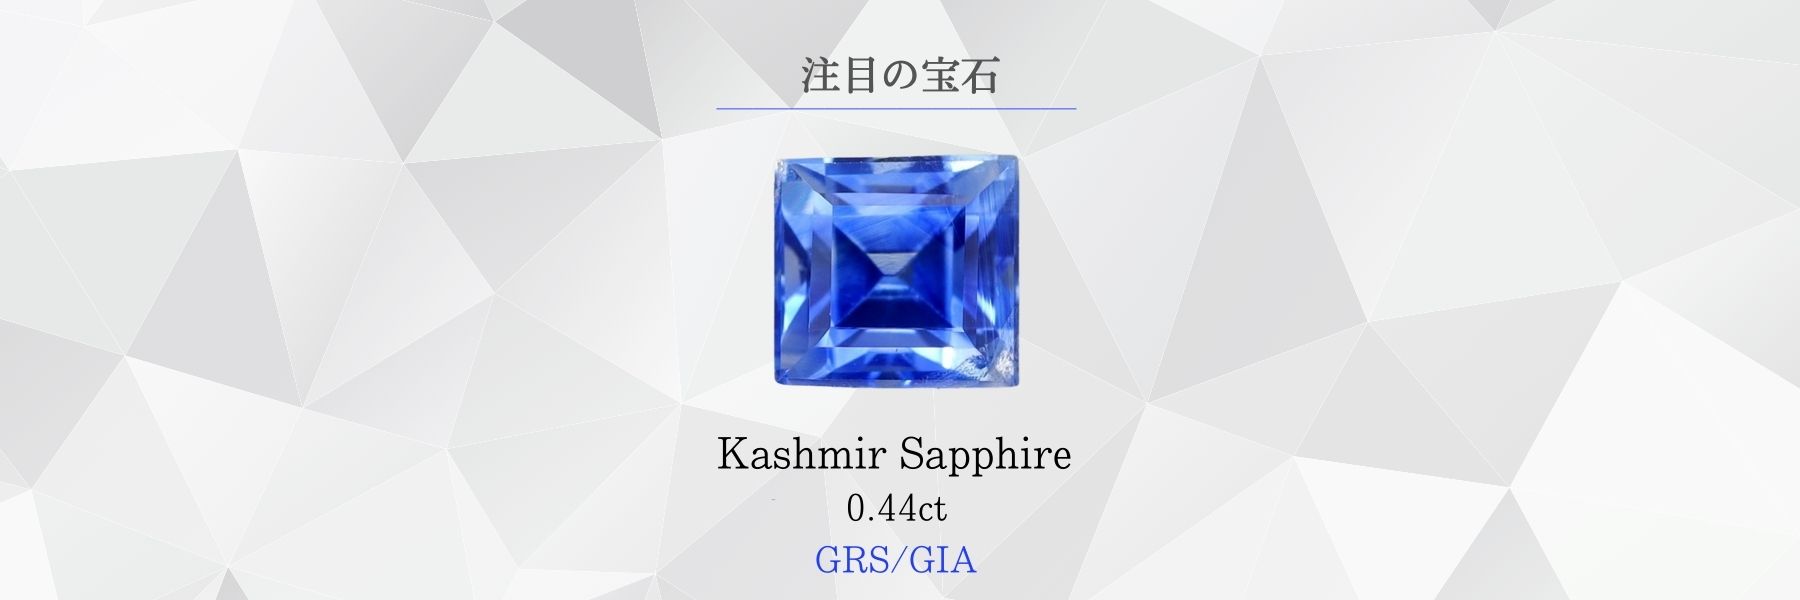 【魅惑のパープルブルー】天然石 タンザナイト ルース 0.44ct